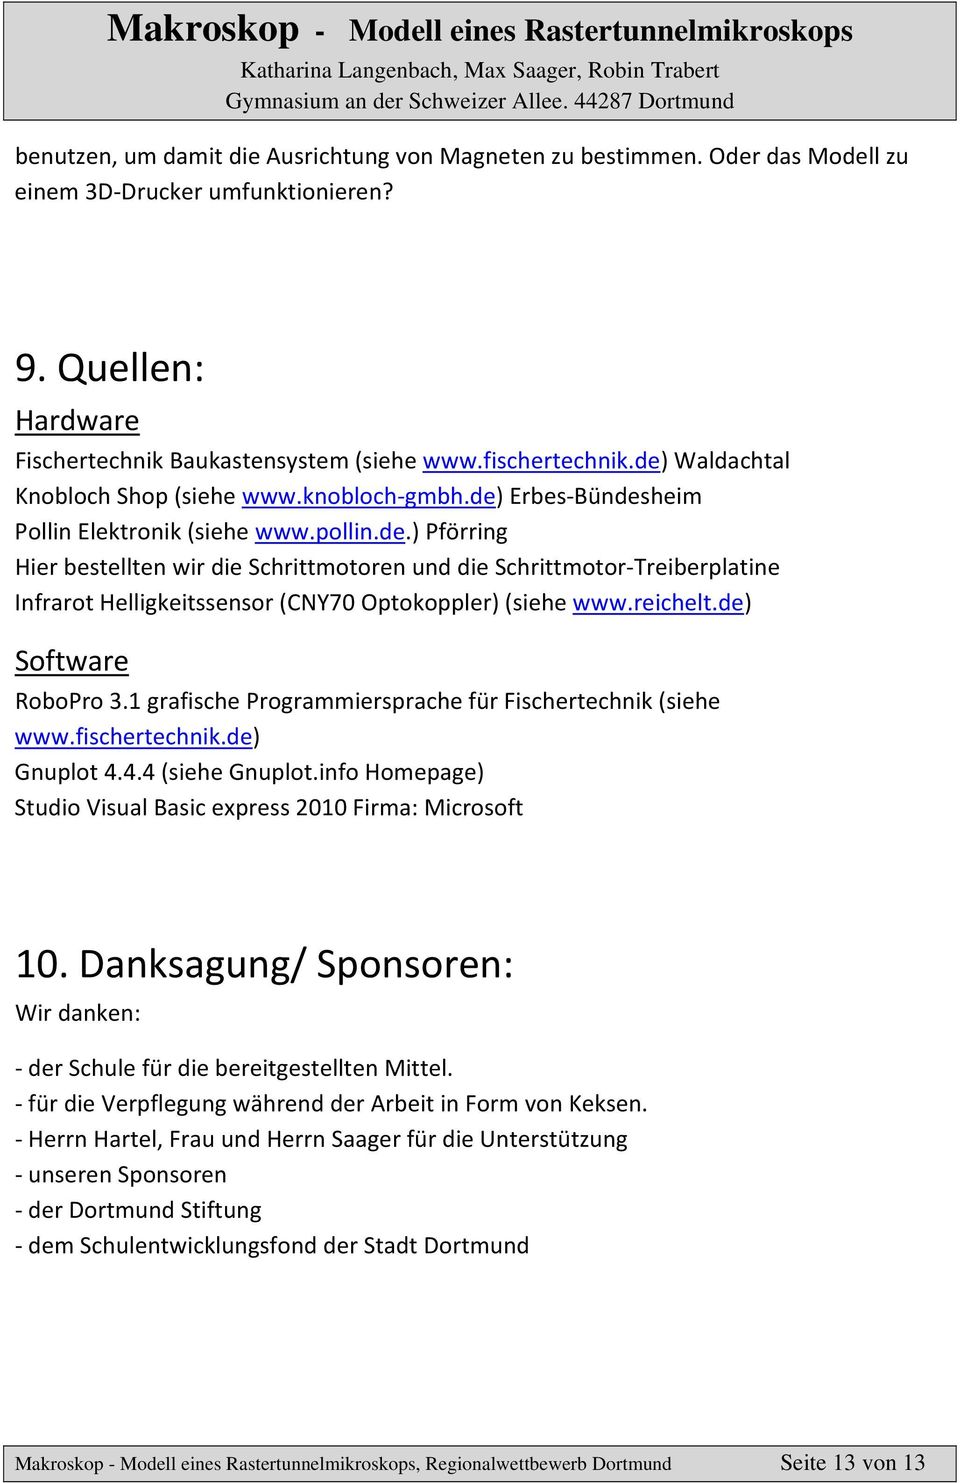 reichelt.de) Software RoboPro 3.1 grafische Programmiersprache für Fischertechnik (siehe www.fischertechnik.de) Gnuplot 4.4.4 (siehe Gnuplot.